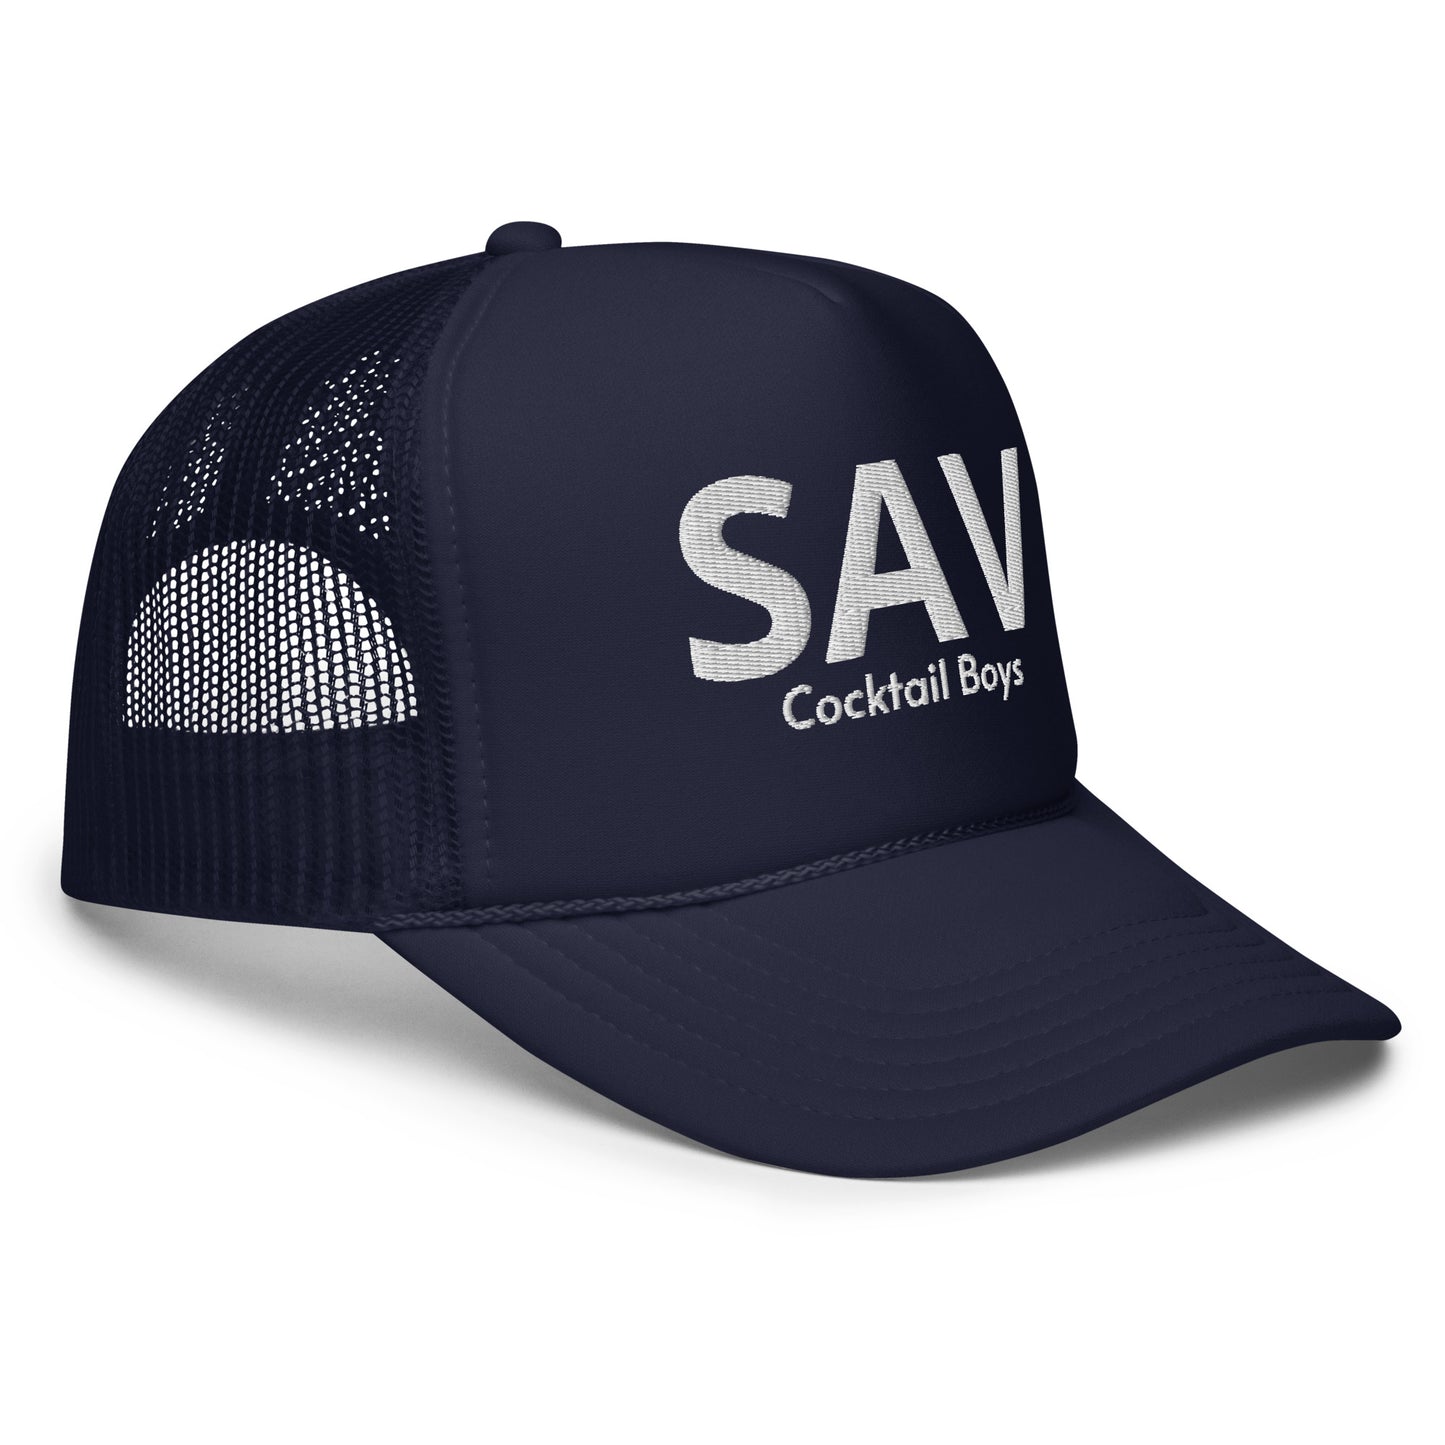 SAV Foam trucker hat